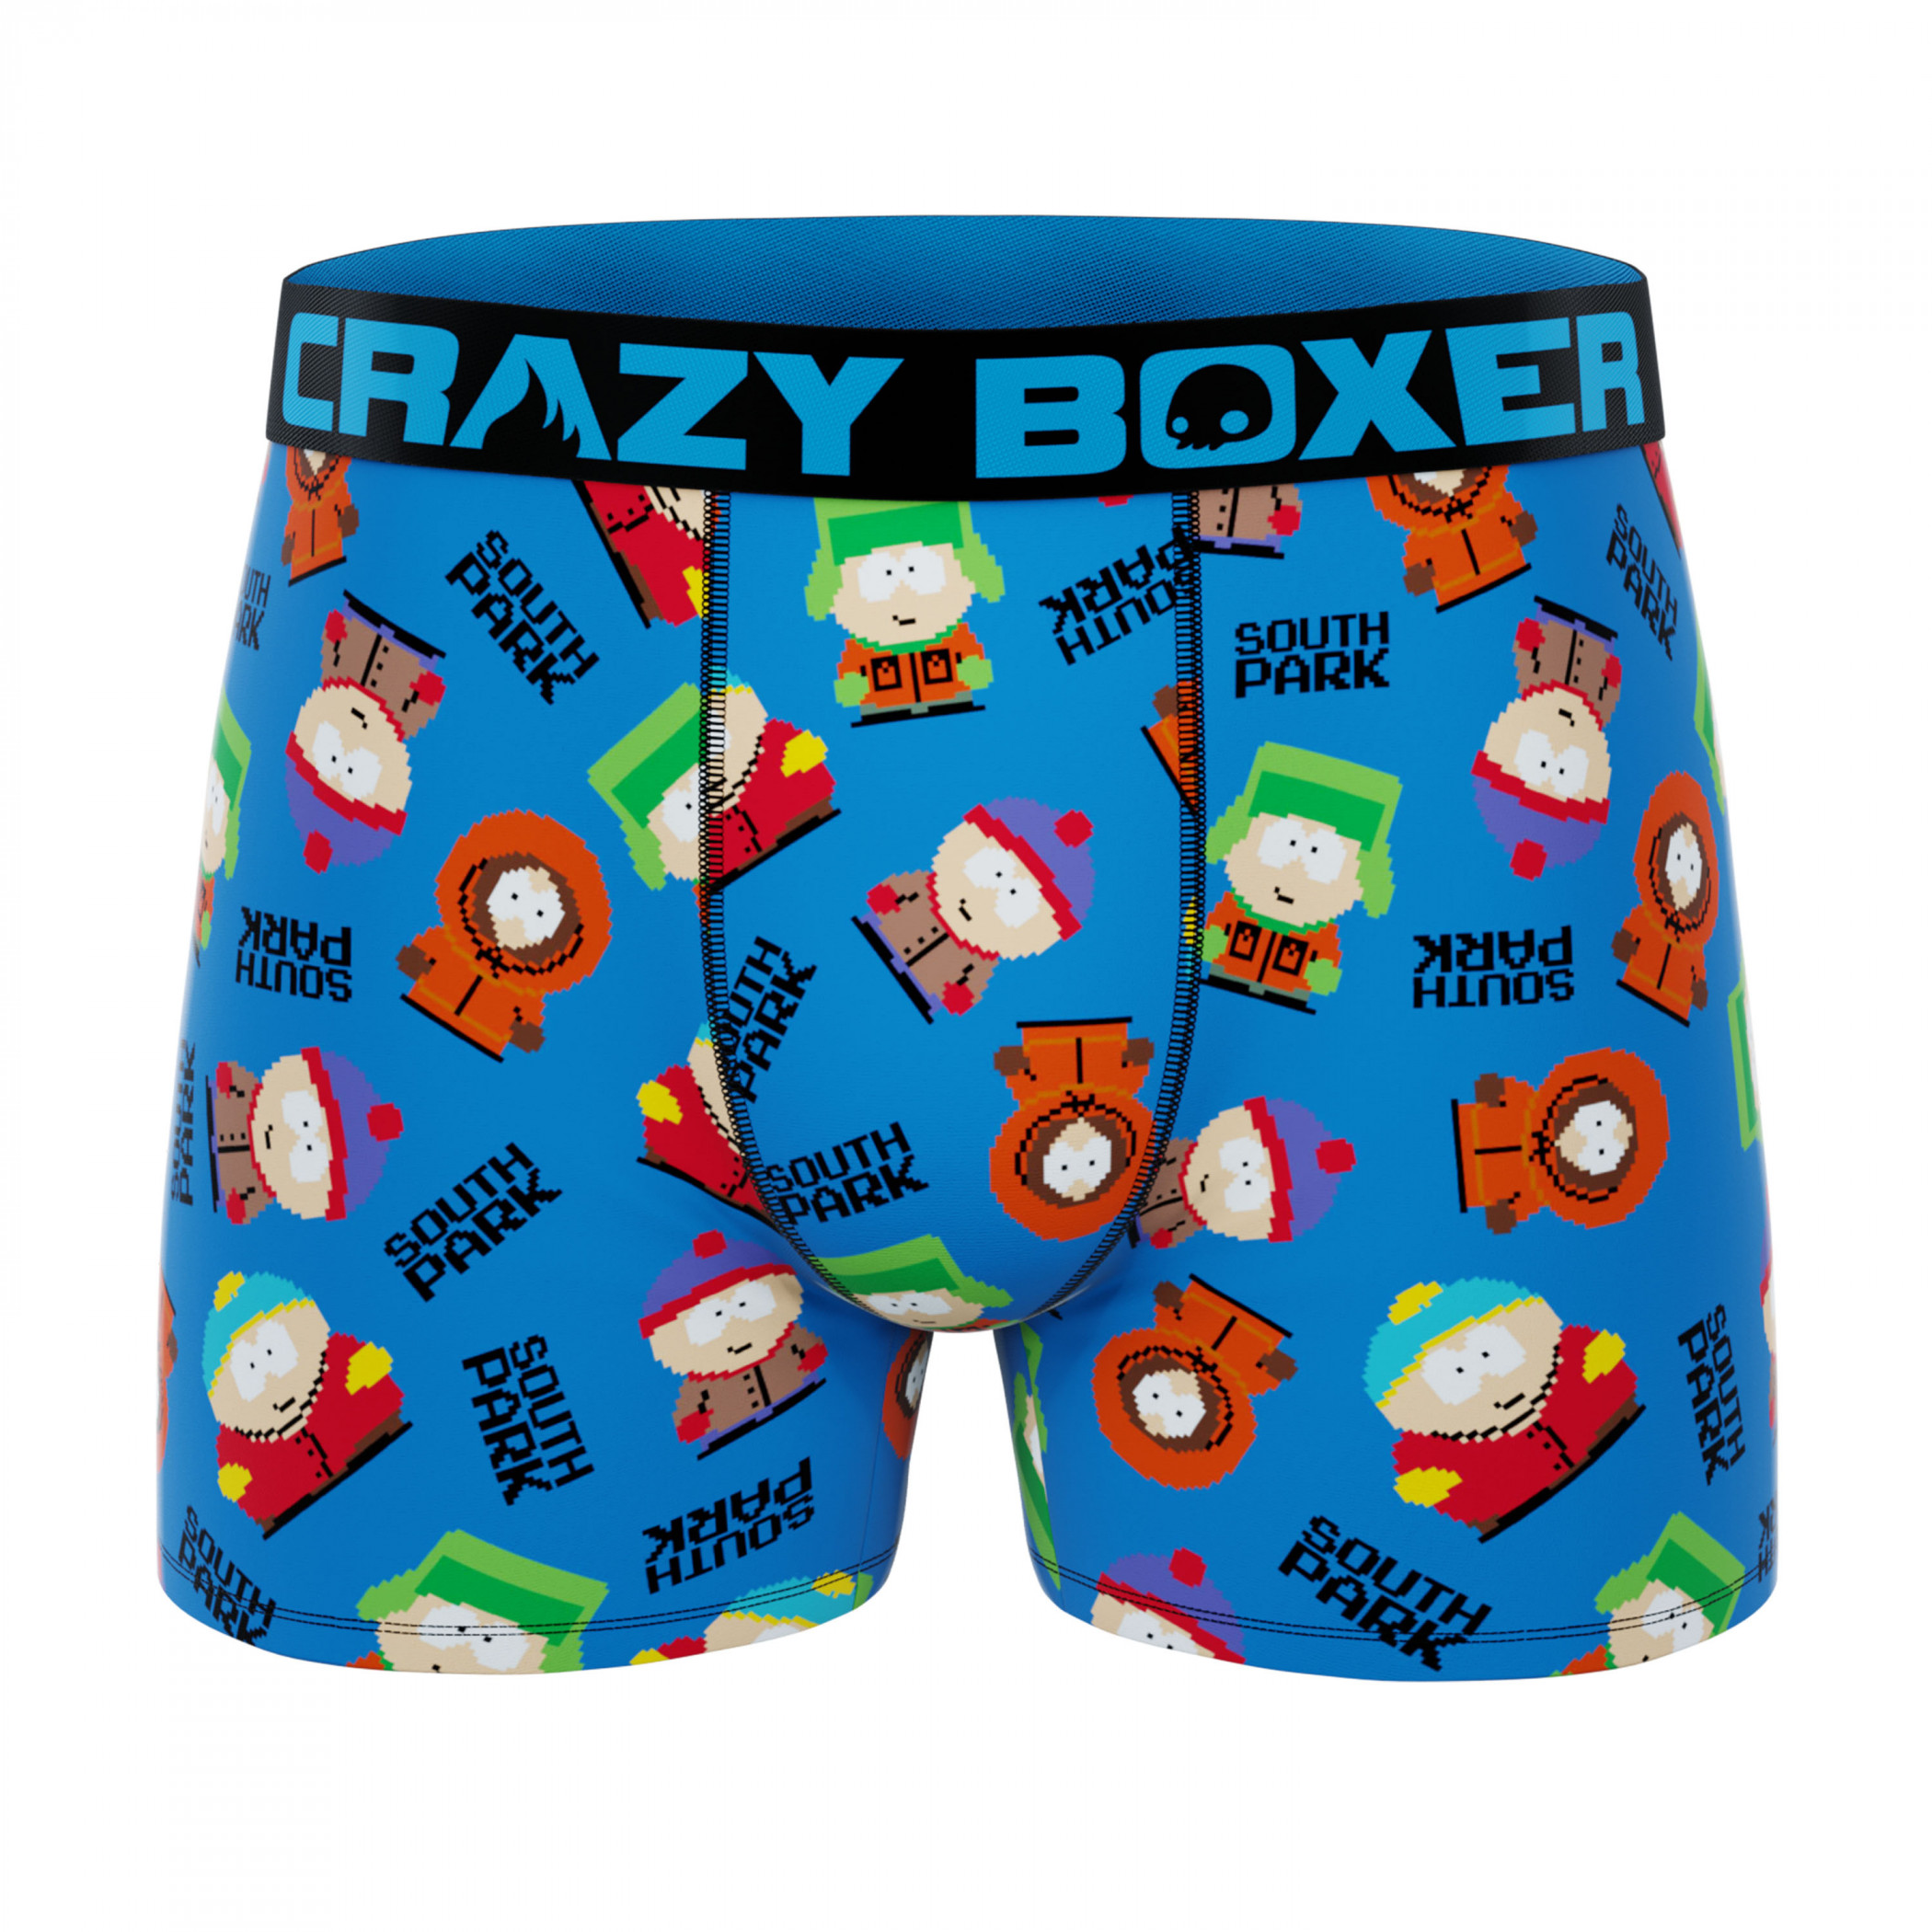 Crazy Boxers South Park School Break Boxer Briefs Blue